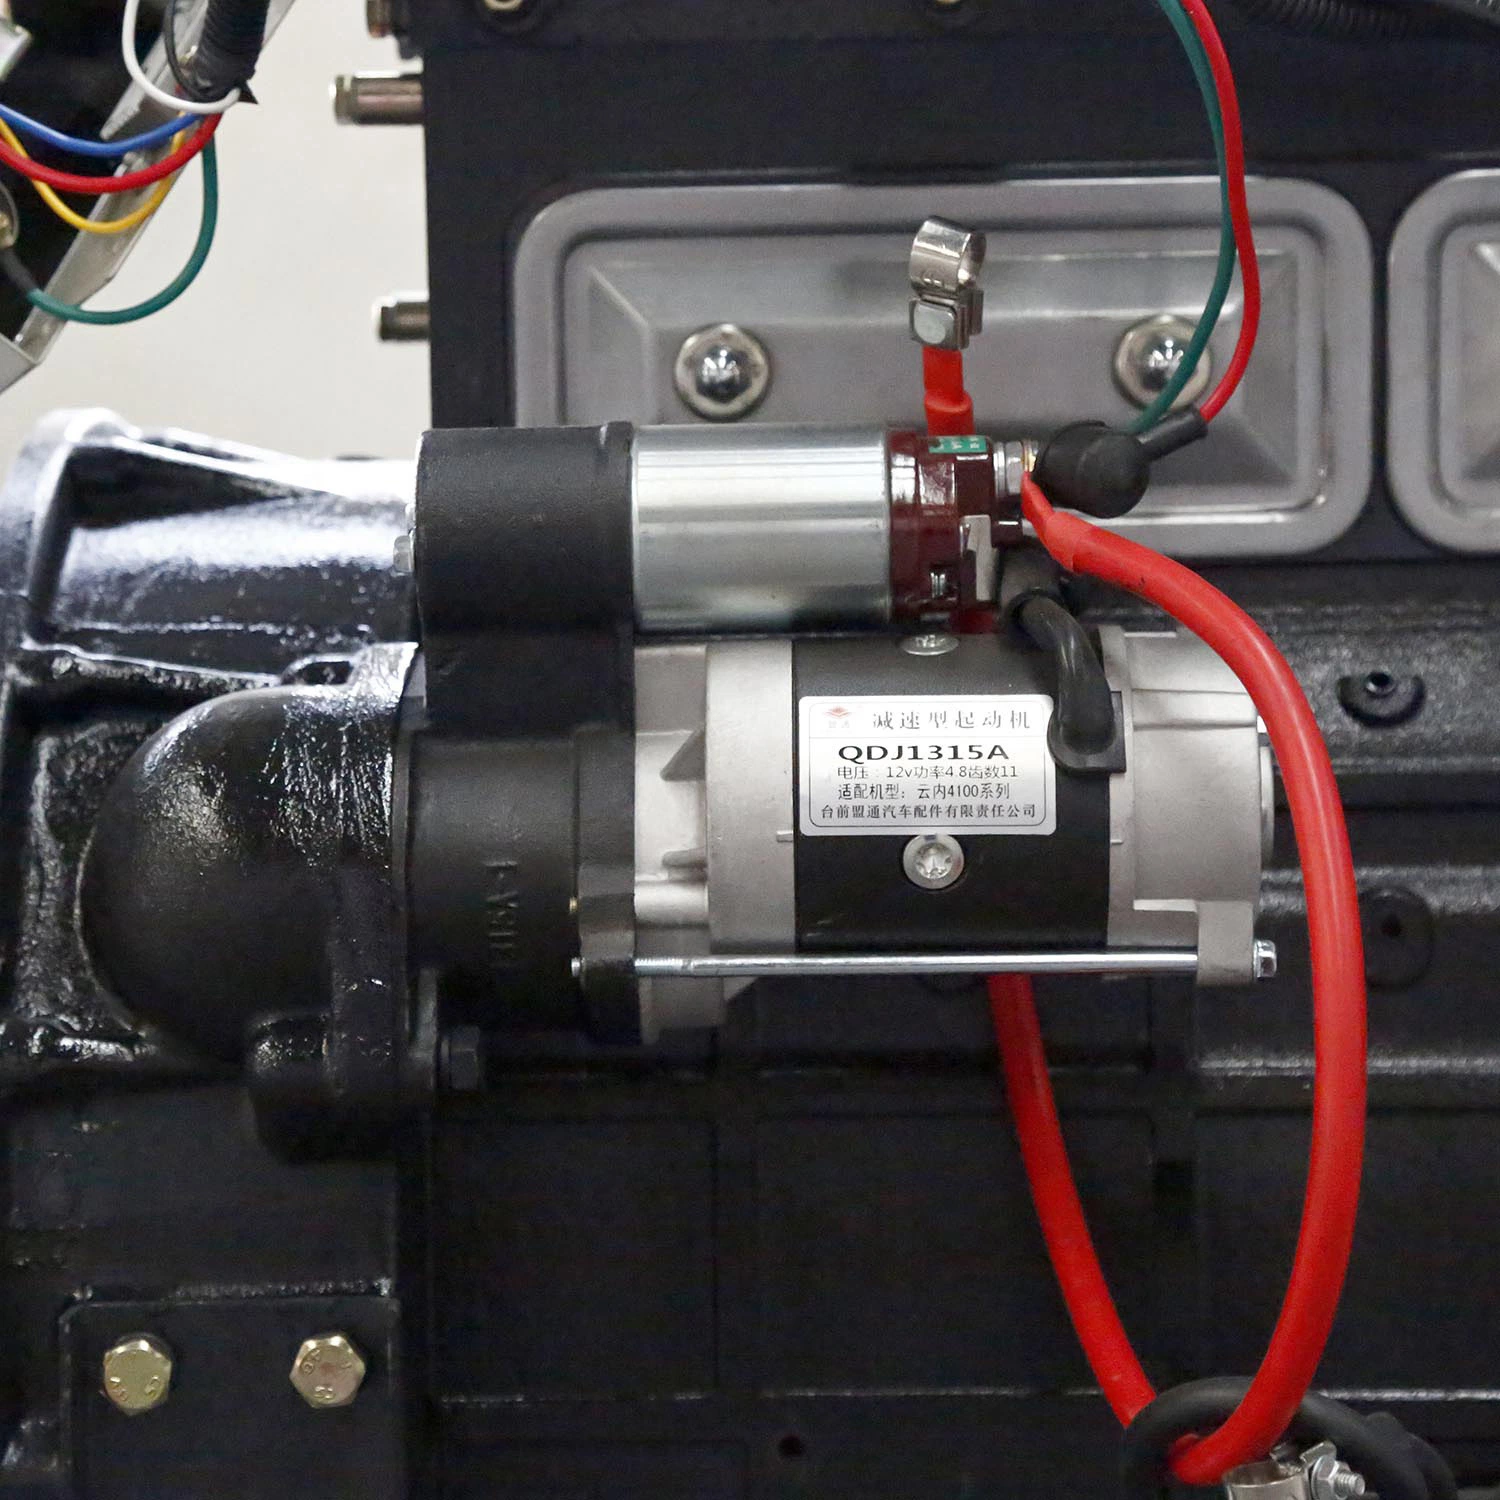 محرك مولد رباعي الأسطوانات لتبريد المياه من الفئة 4100 /الطاقة الكهربائية محركات الديزل/التوليد